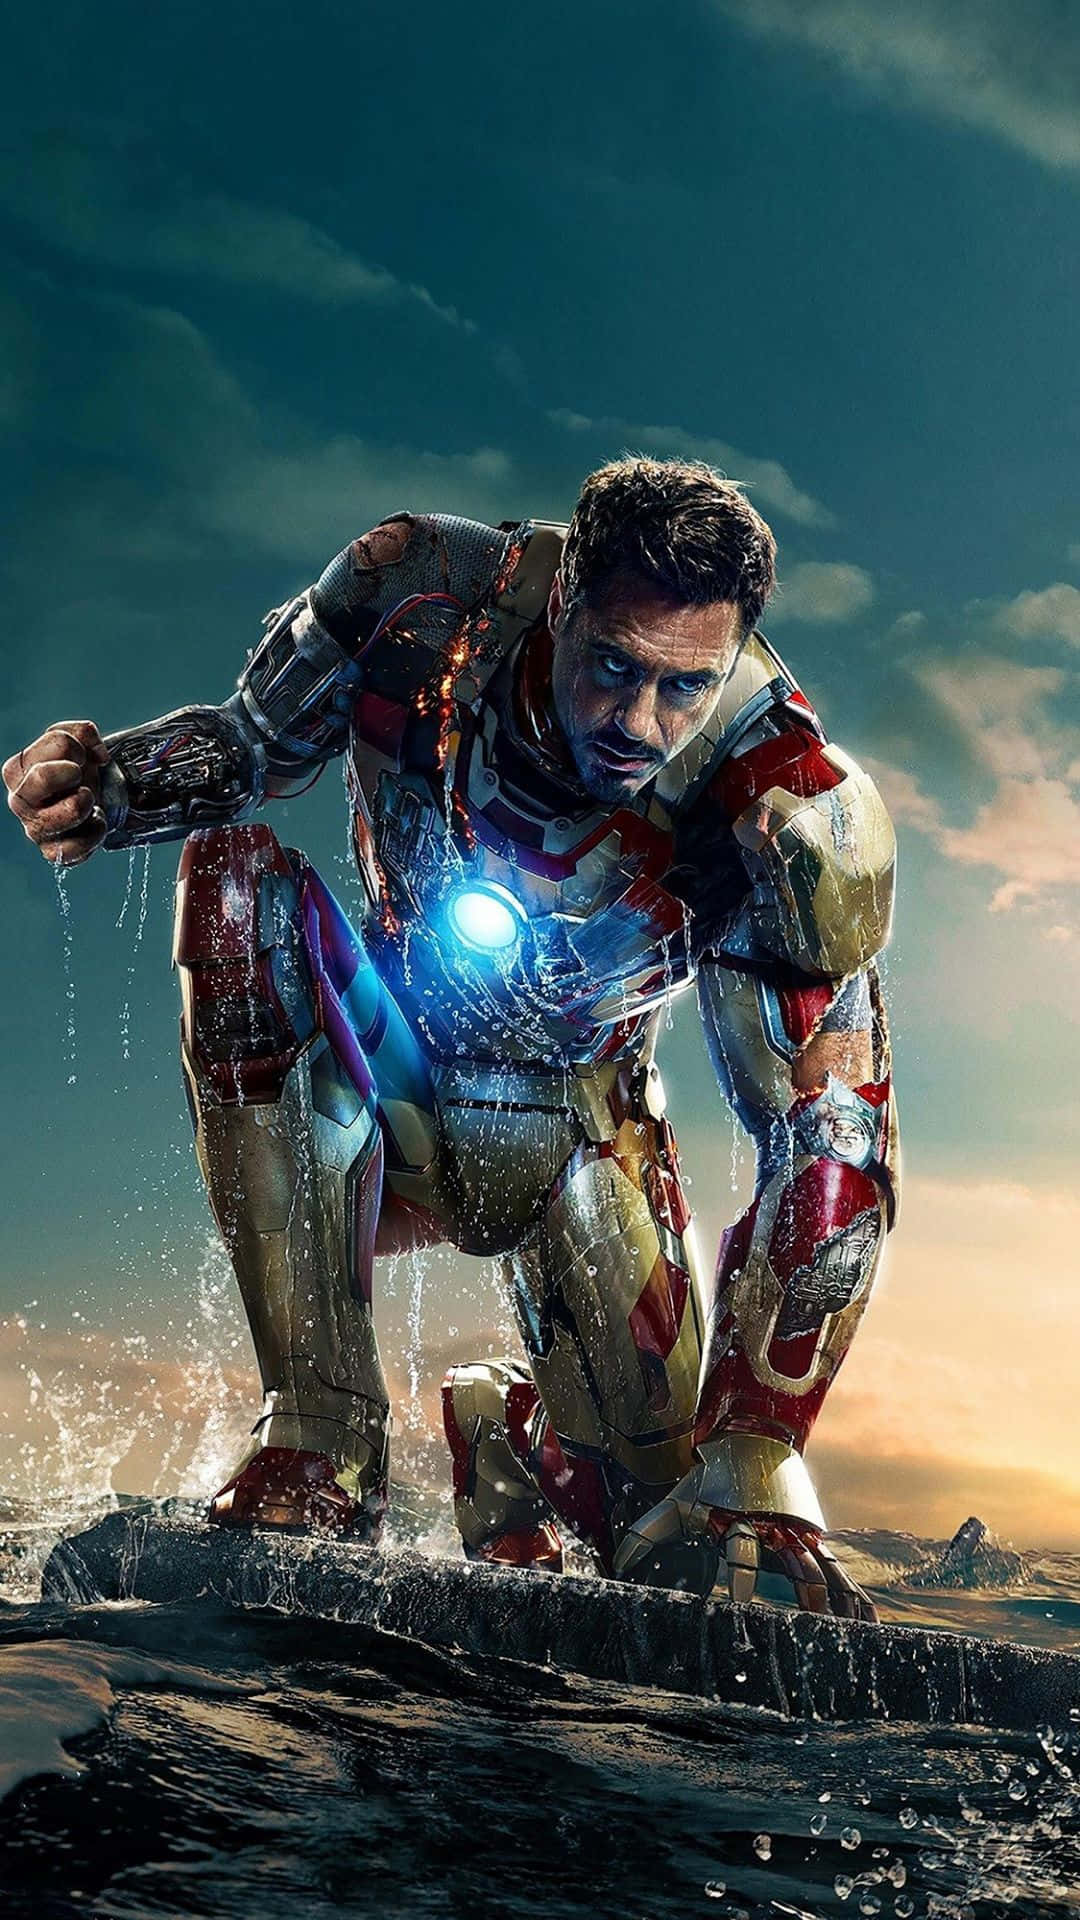 Blilika Skyddad Som Iron Man Med Den Kraftfulla Iphone X:en - Som Bakgrundsbild På Datorn Eller Mobilen. Wallpaper